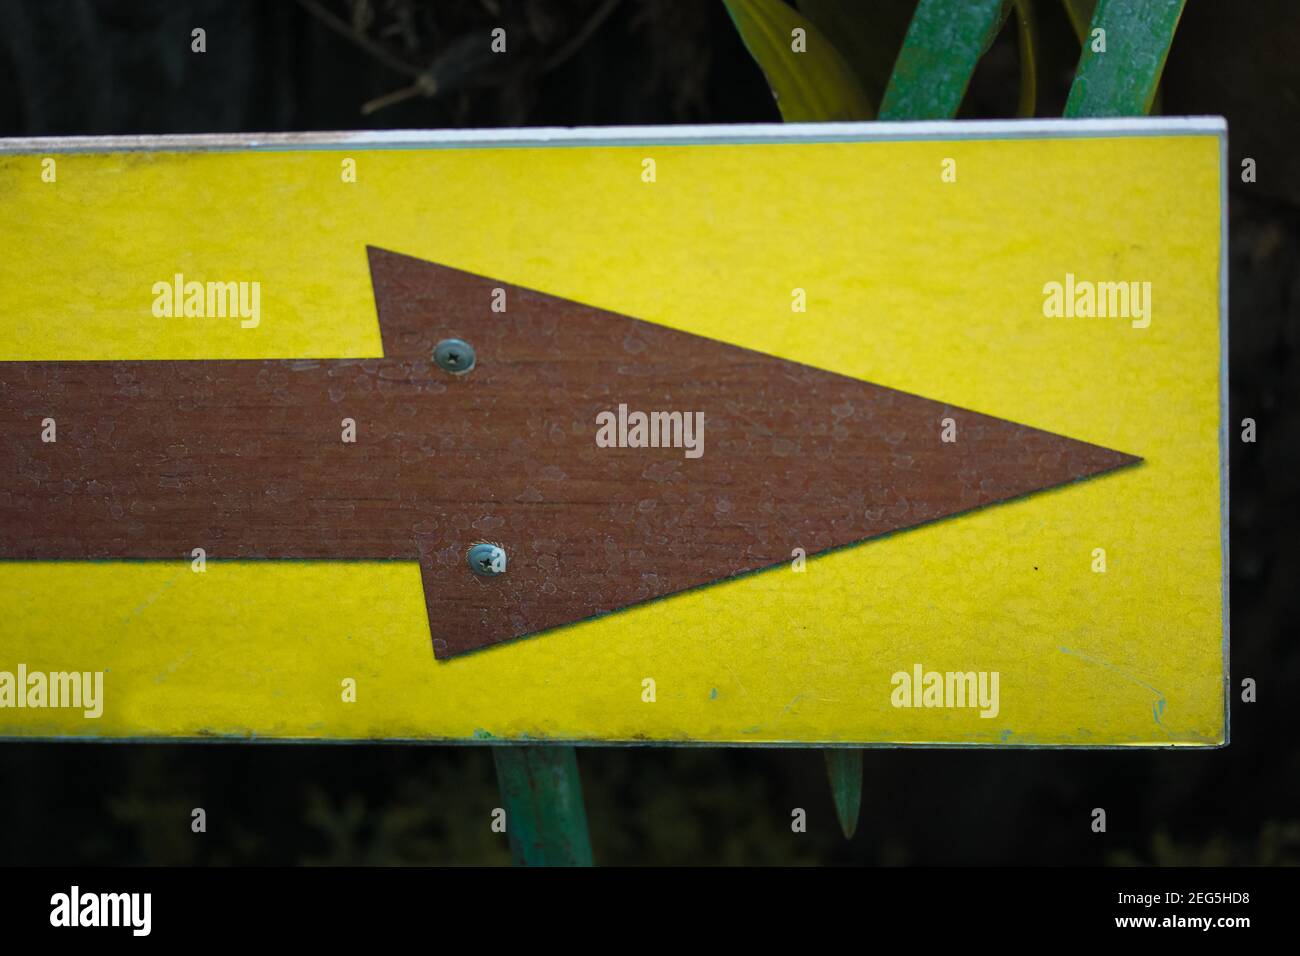 Signo de flecha de madera amarilla en blanco que apunta a la entrada de un jardín botánico, invernadero o selva. Plantas tropicales verdes en el fondo Foto de stock